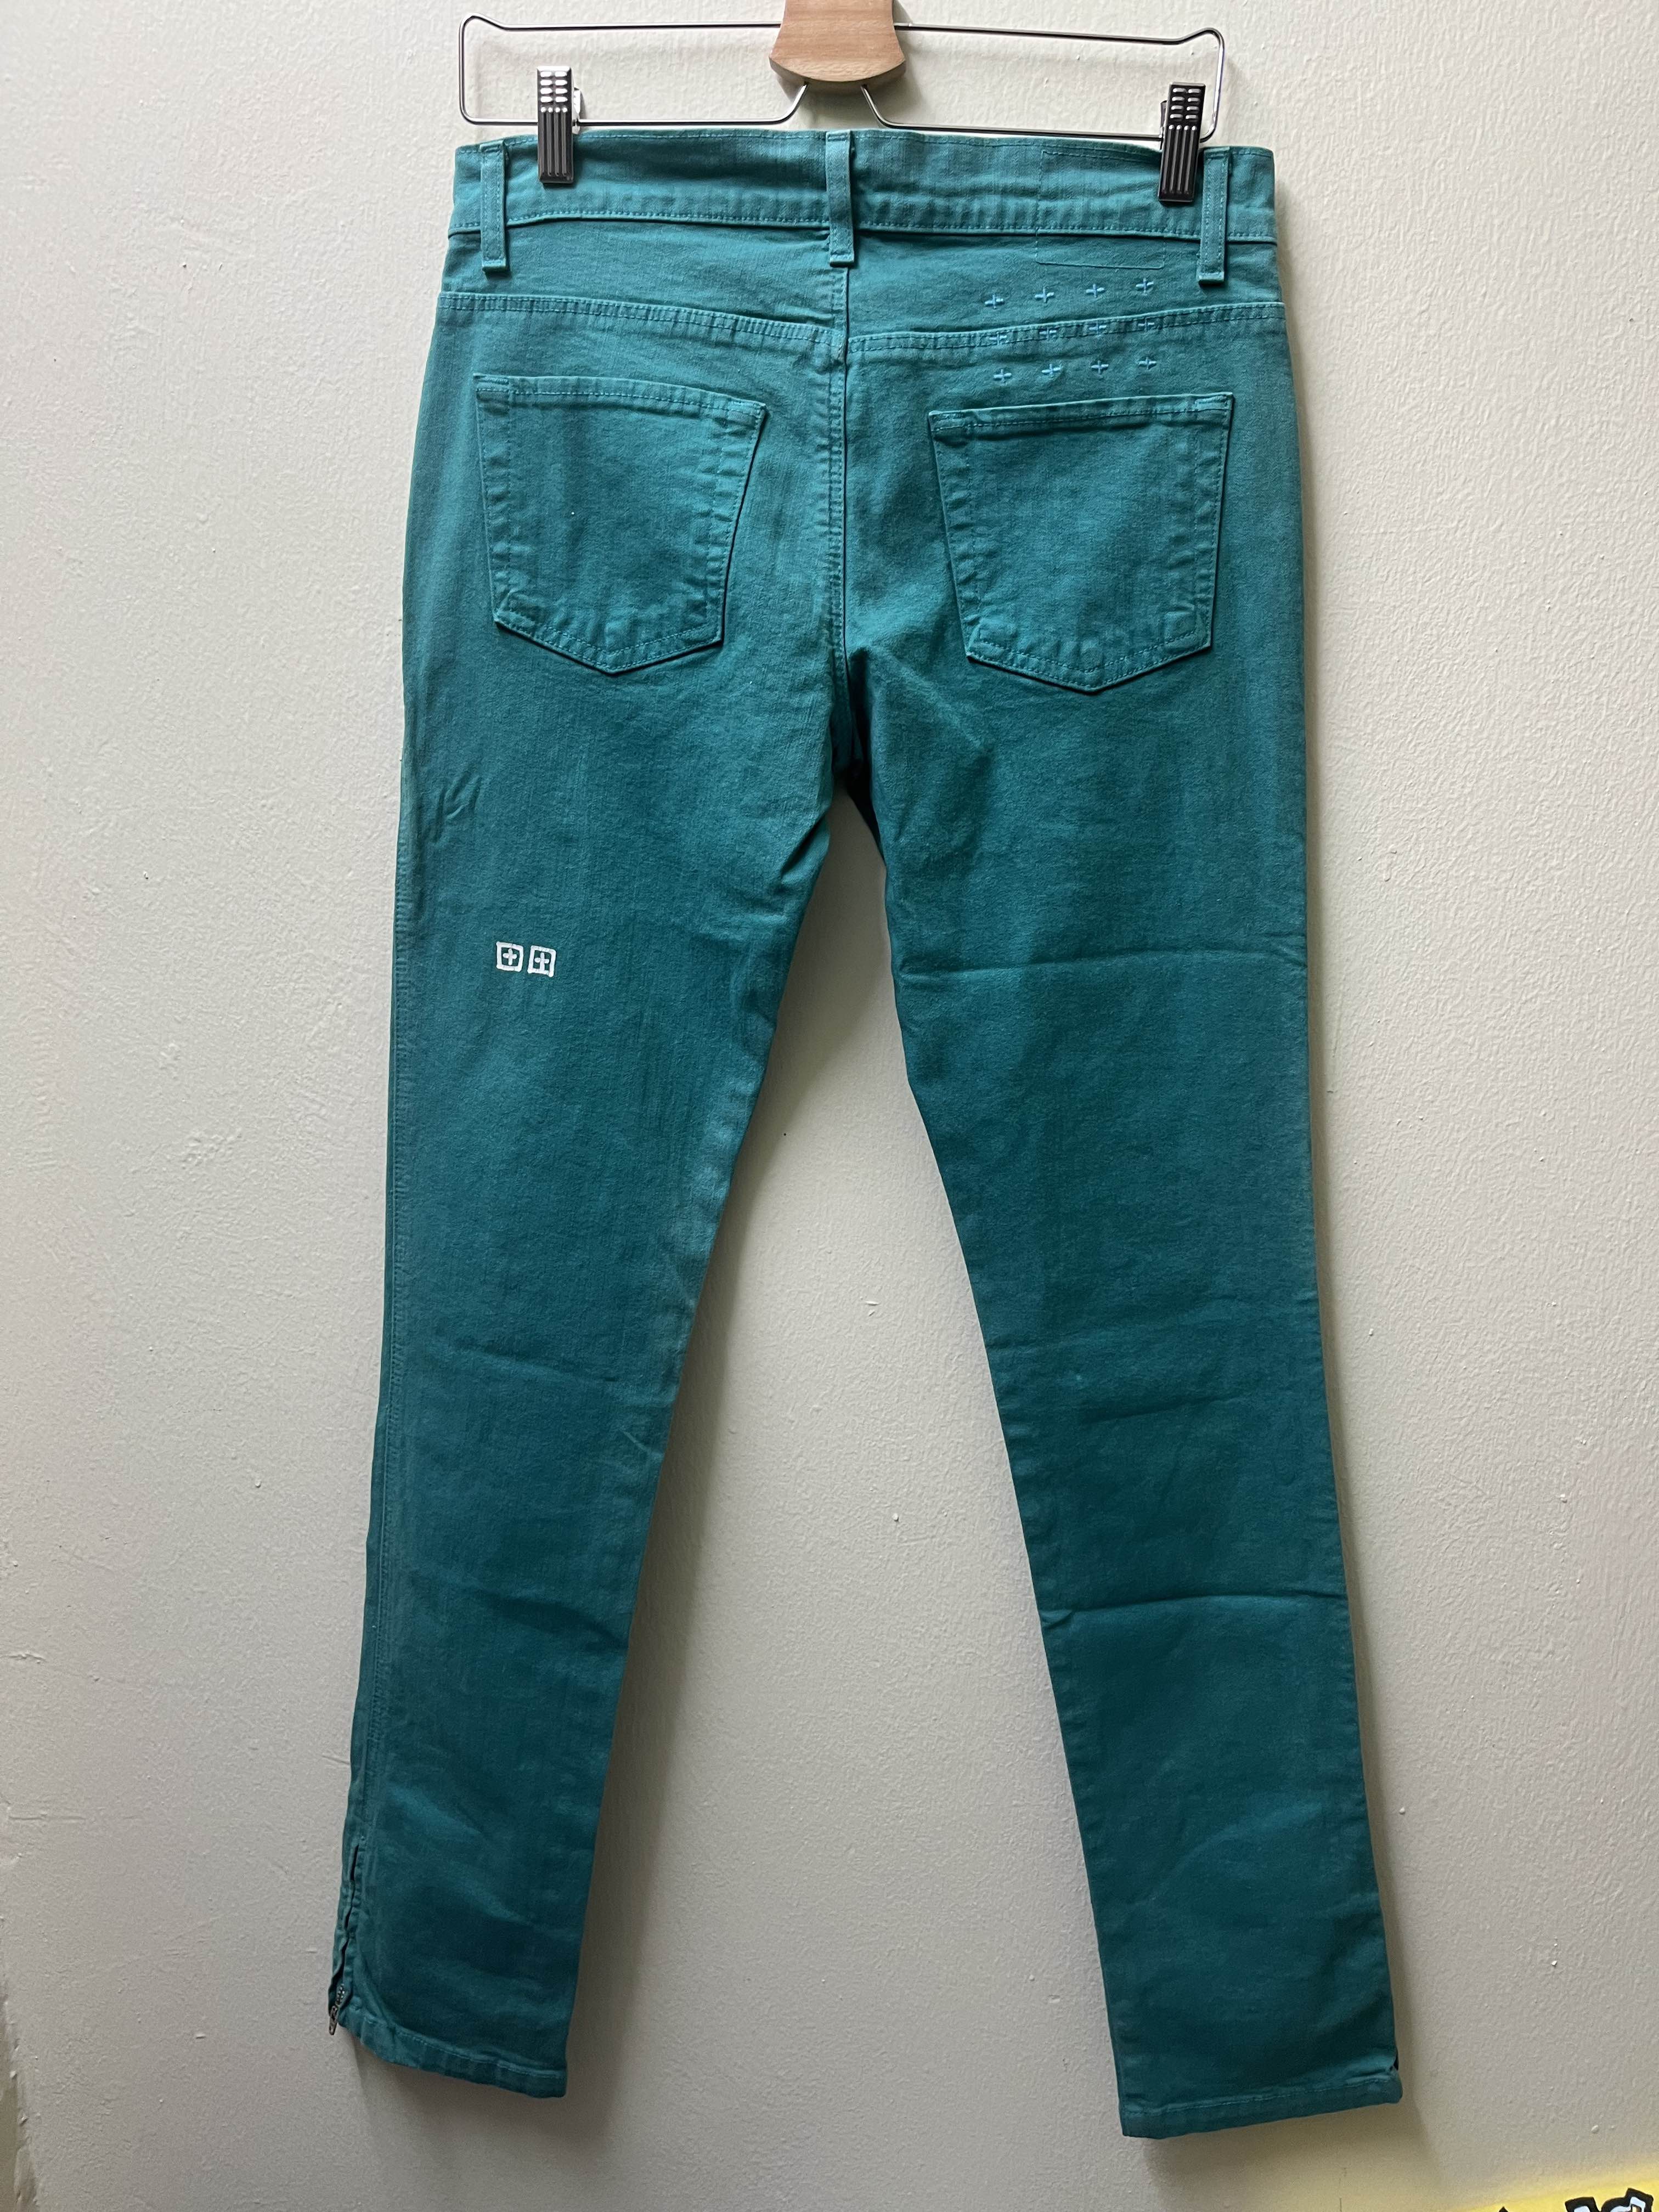 Ksubi Denim Jeans Pants - 7